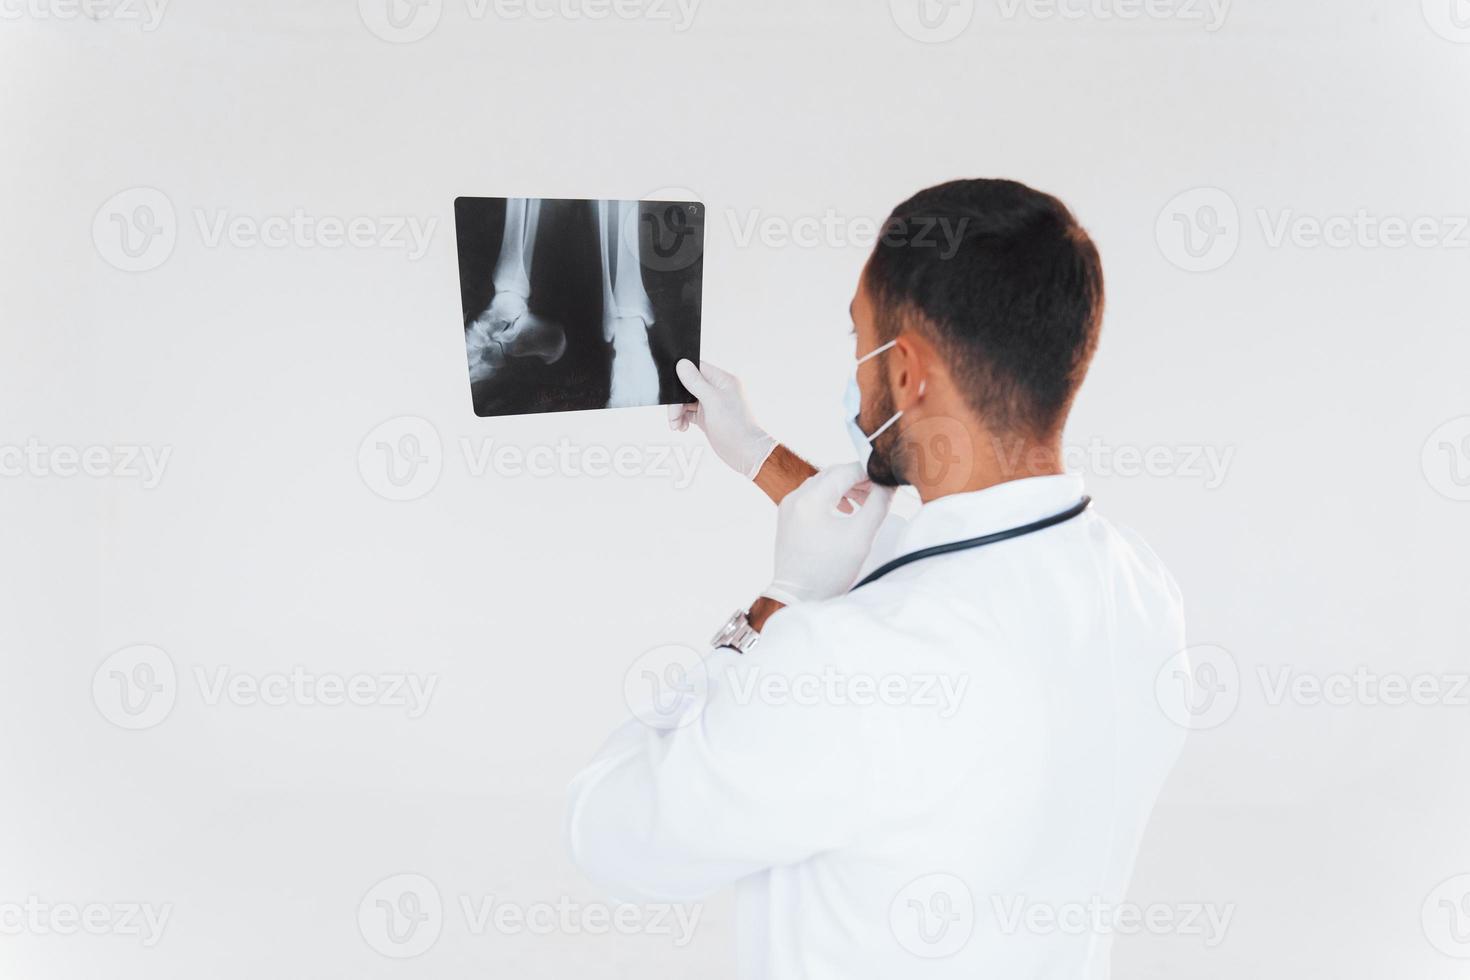 Sanitäter mit Röntgen. junger gutaussehender Mann, der drinnen vor weißem Hintergrund steht foto